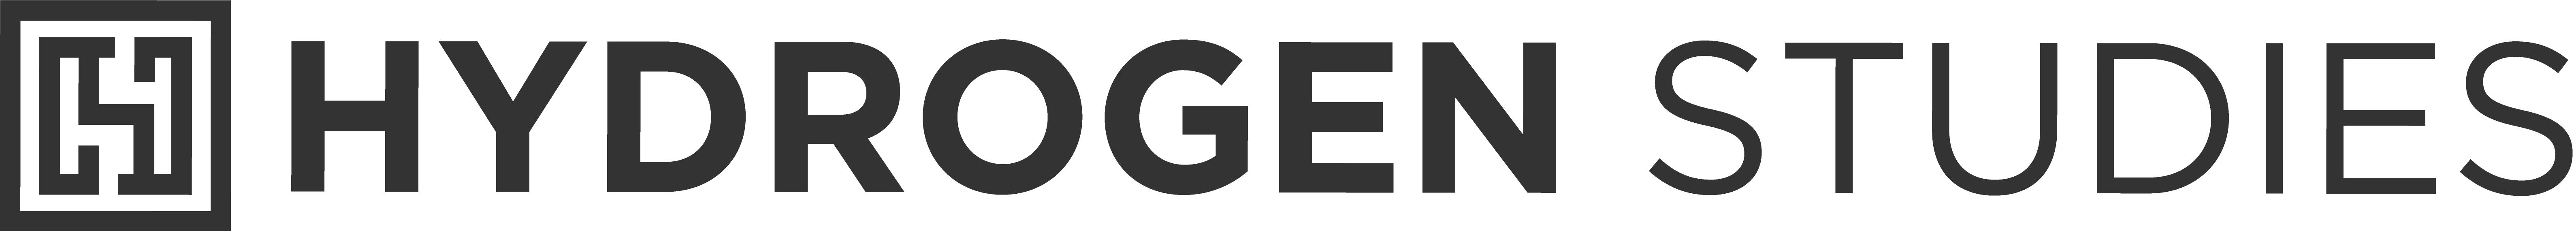 Hydrogen Studies Logo